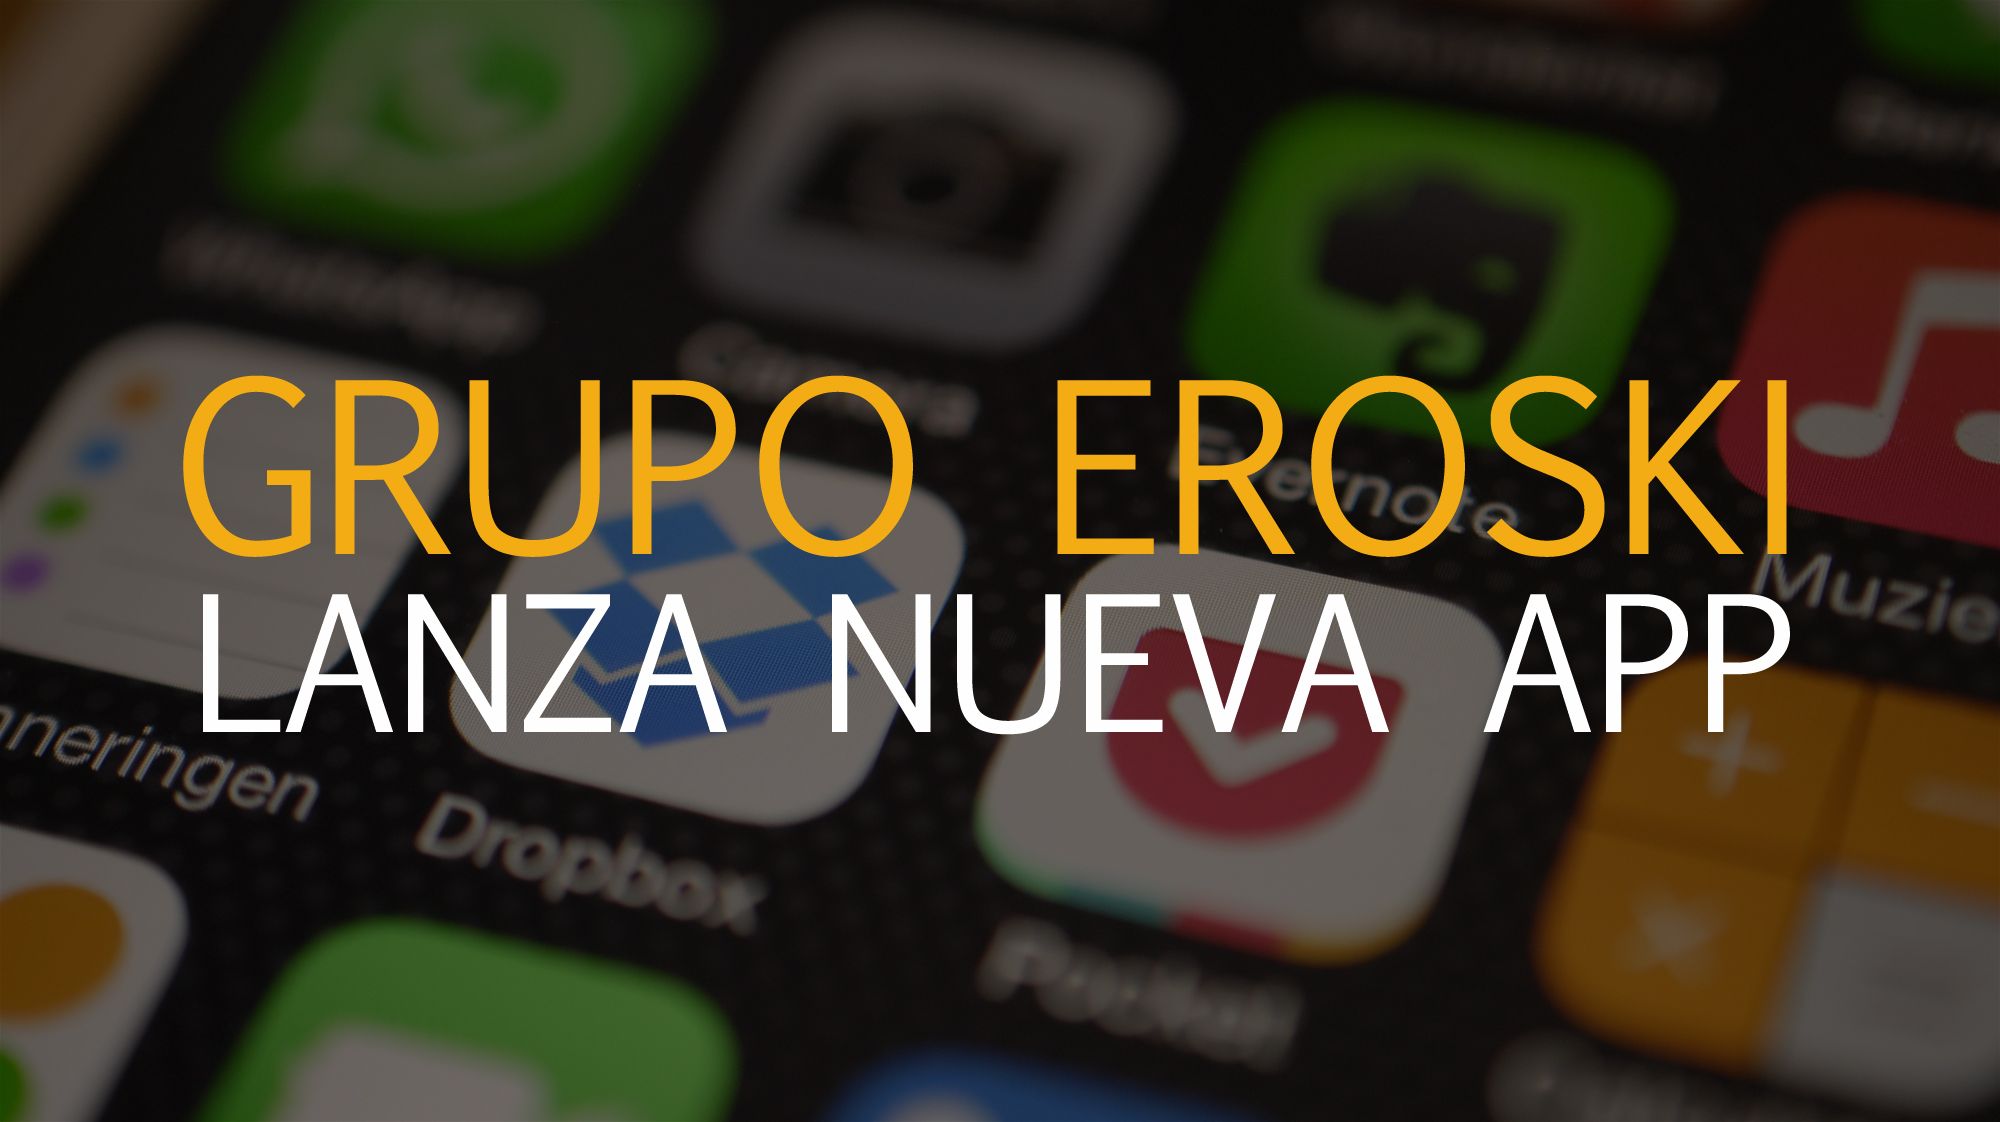 Grupo Eroski lanza nueva App para comprar online